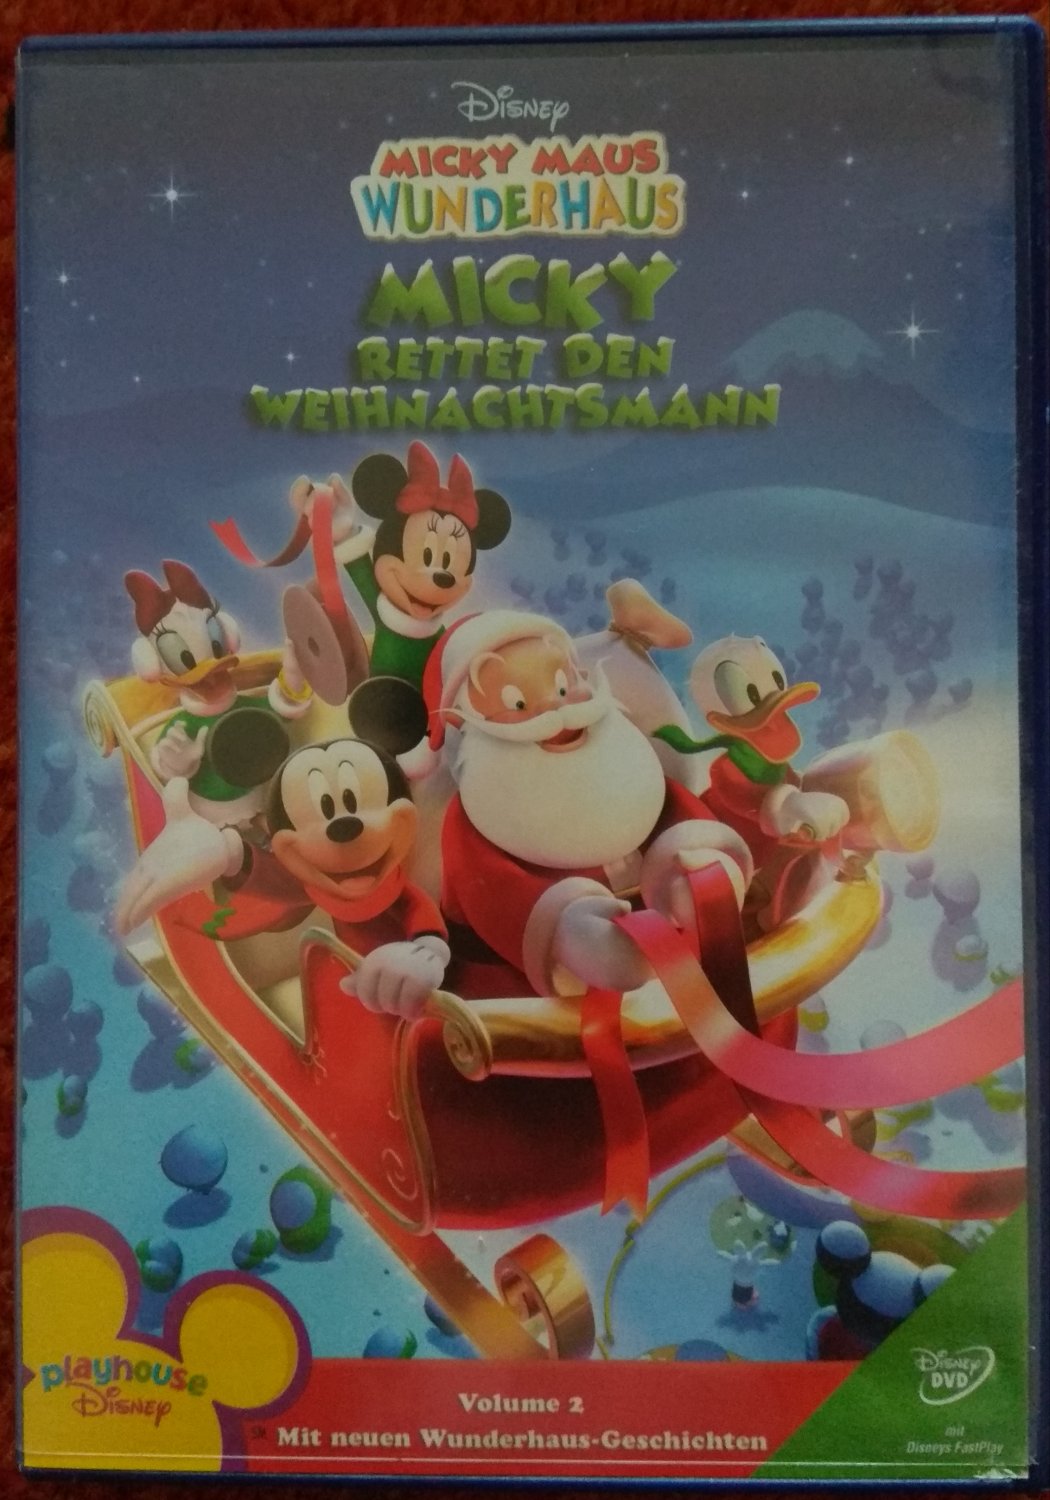 Weihnachten feiern mit Micky [3 DVDs]' von '' - 'DVD